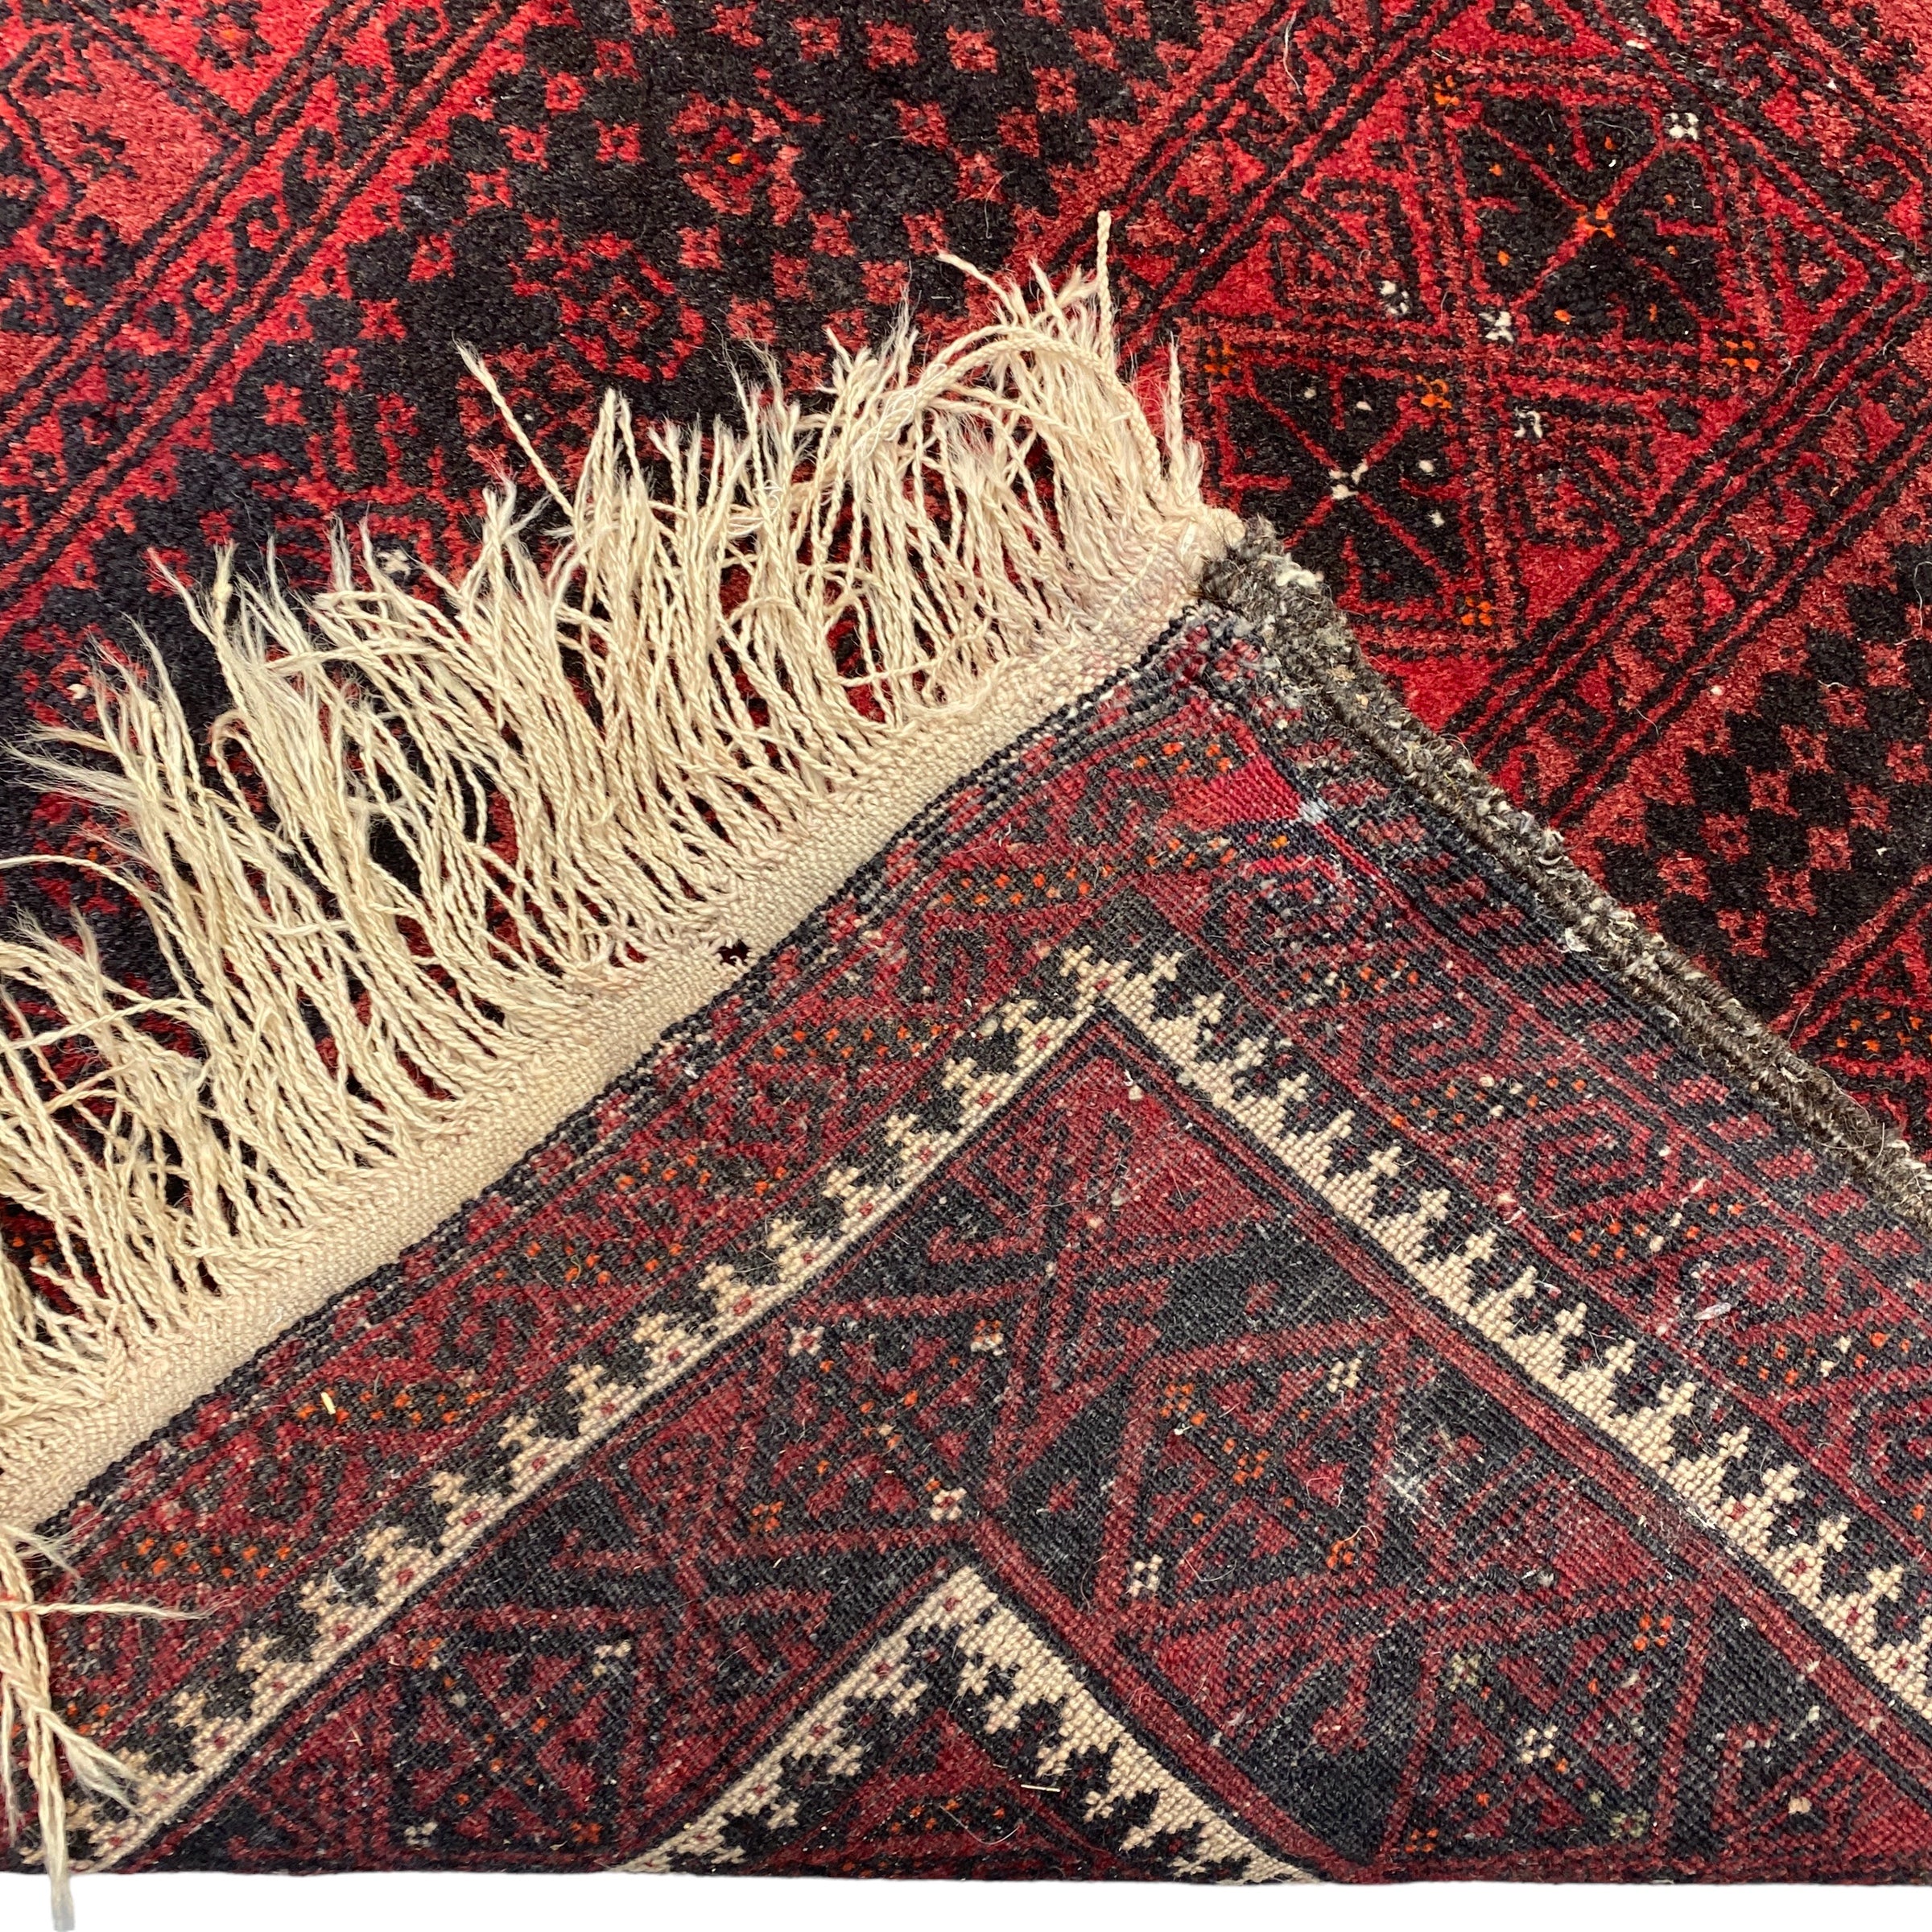 Underside Of Vintage Persian Rug